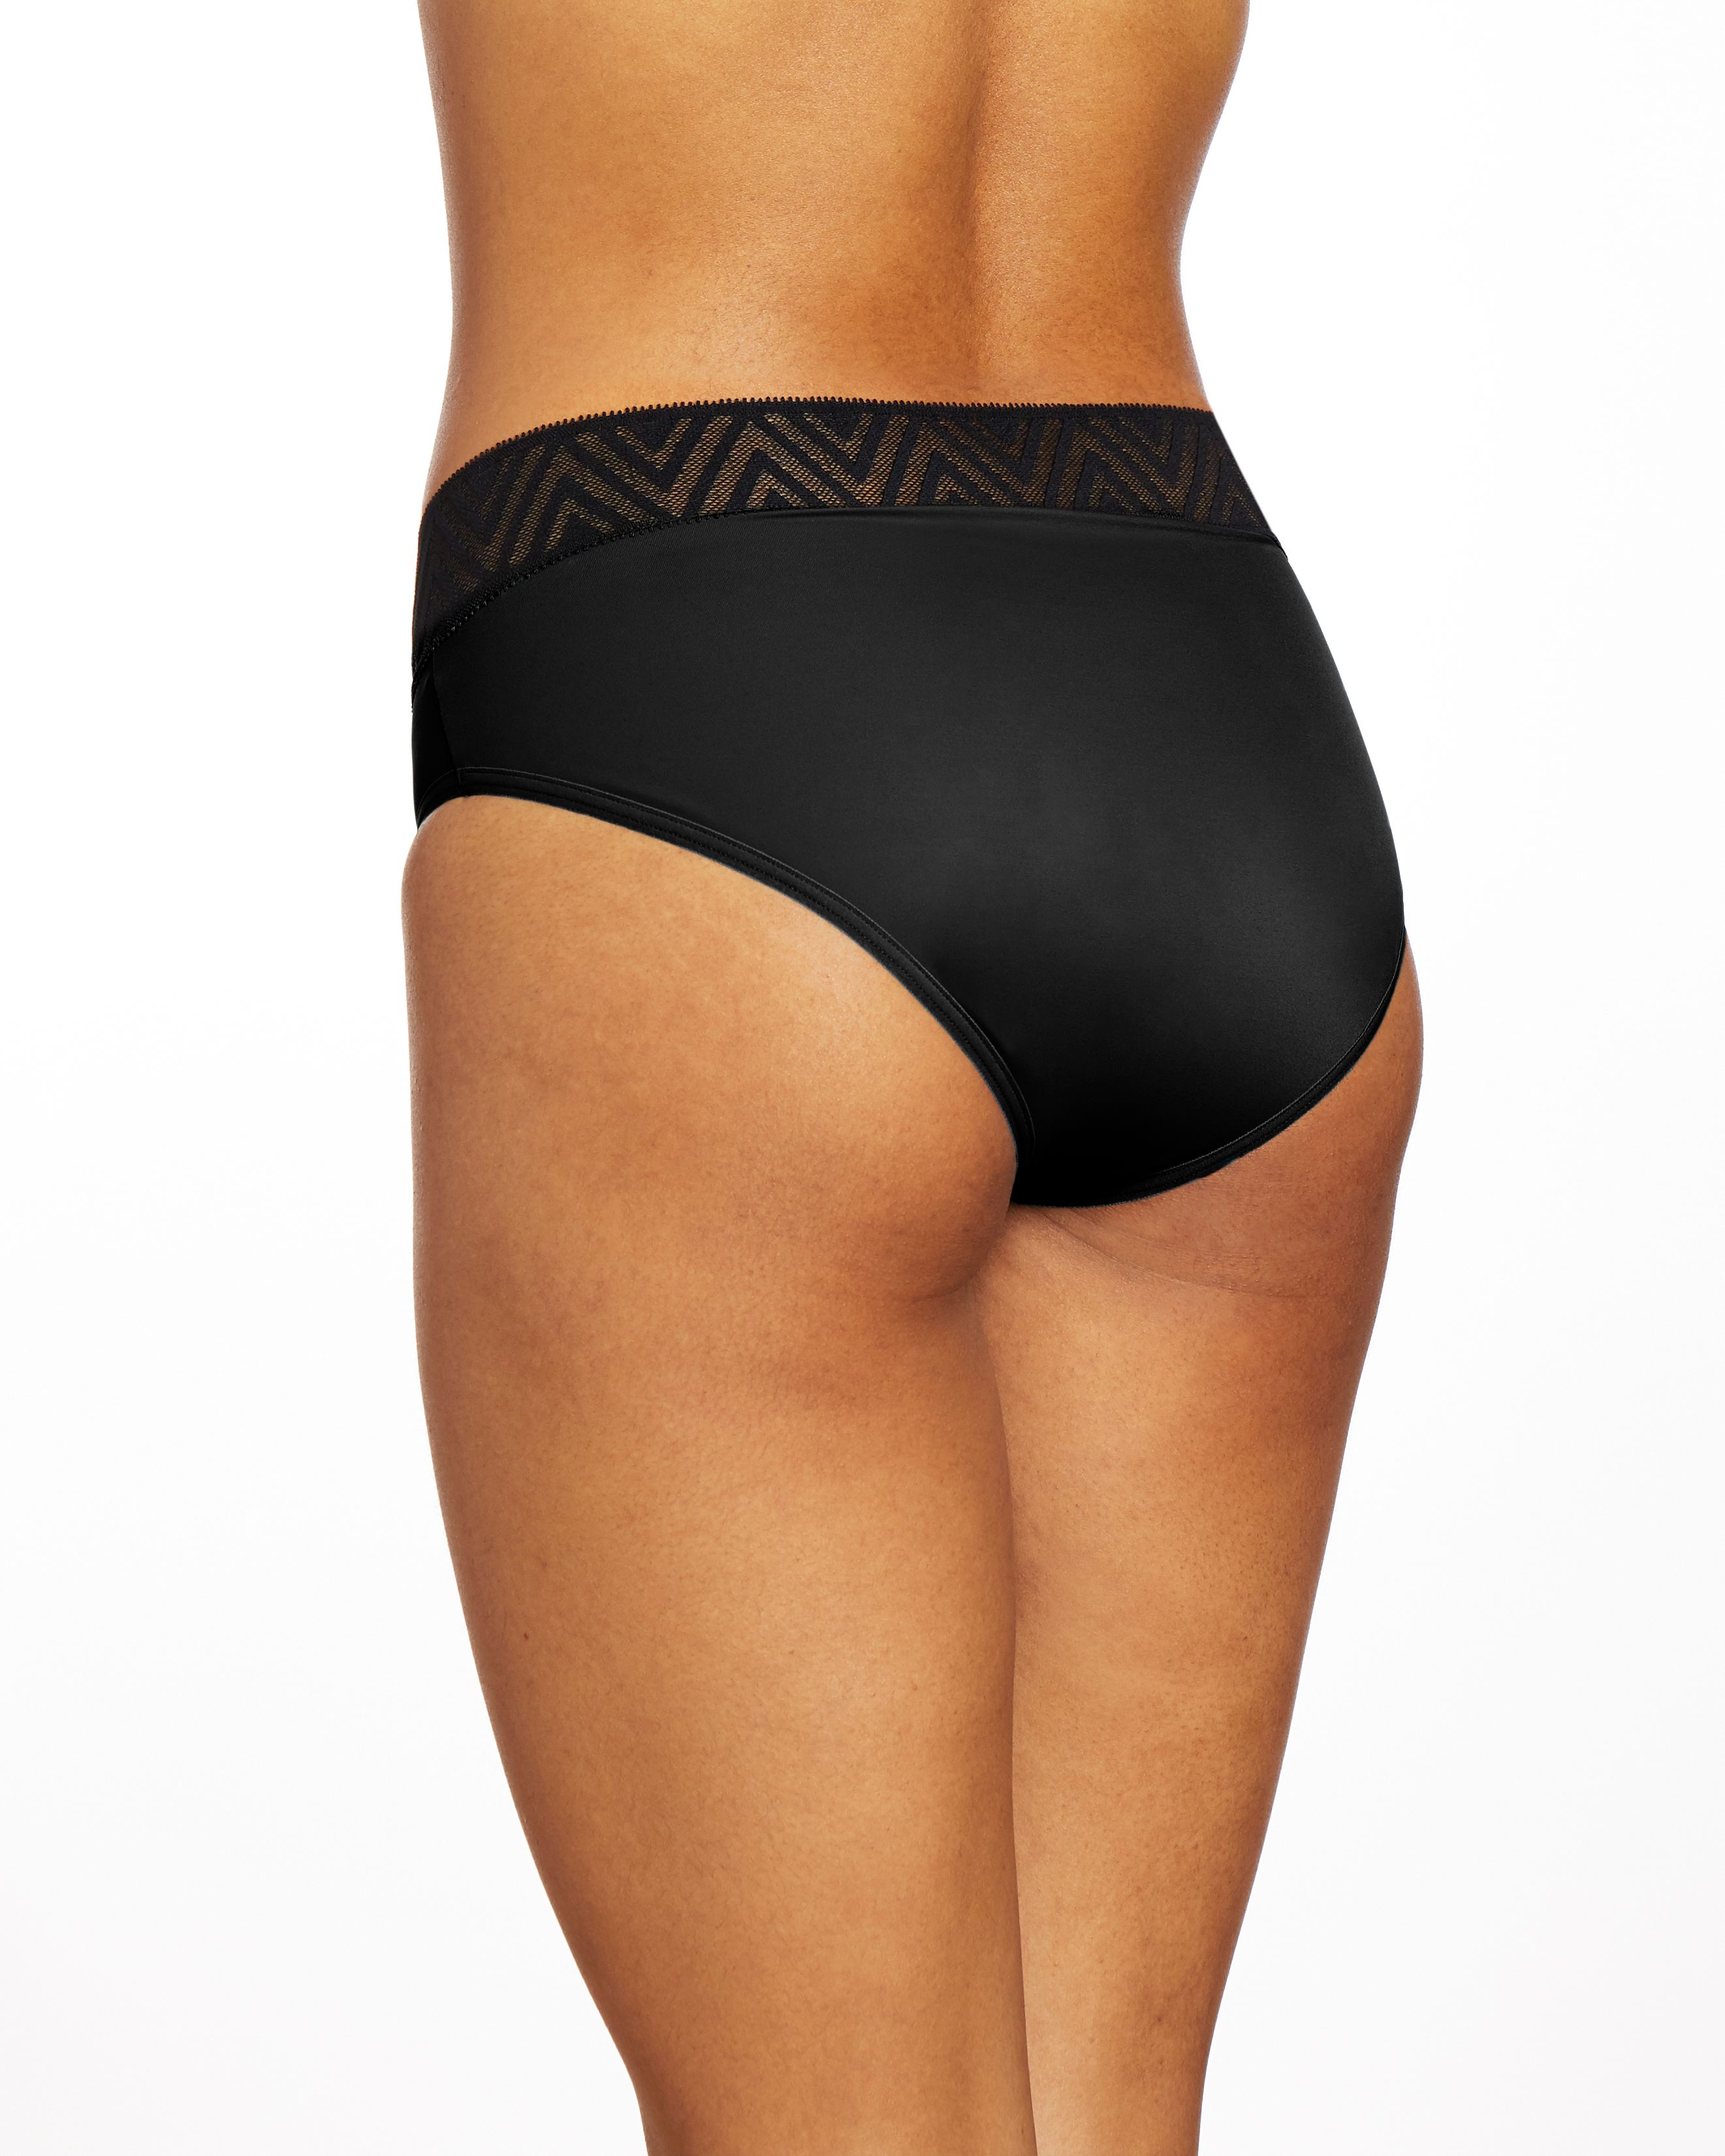 Thinx for All Women Briefs Period Underwear - L 1 ct